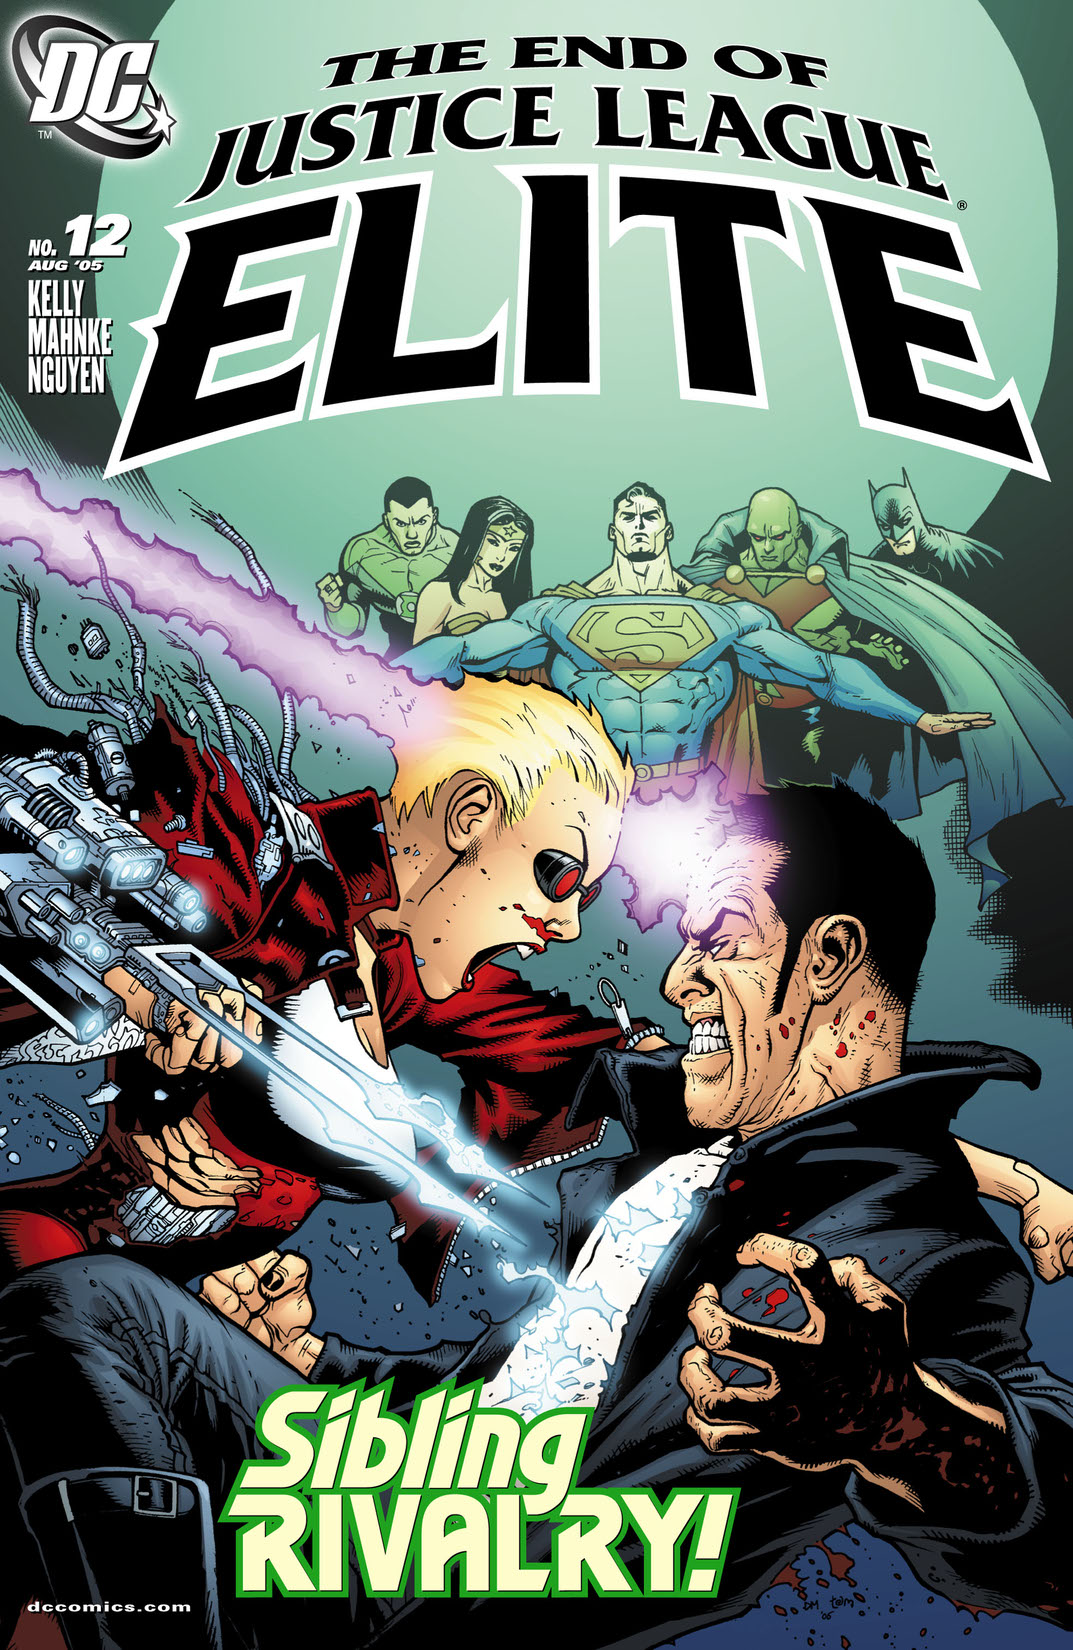 Justice League: Elite #12 preview images